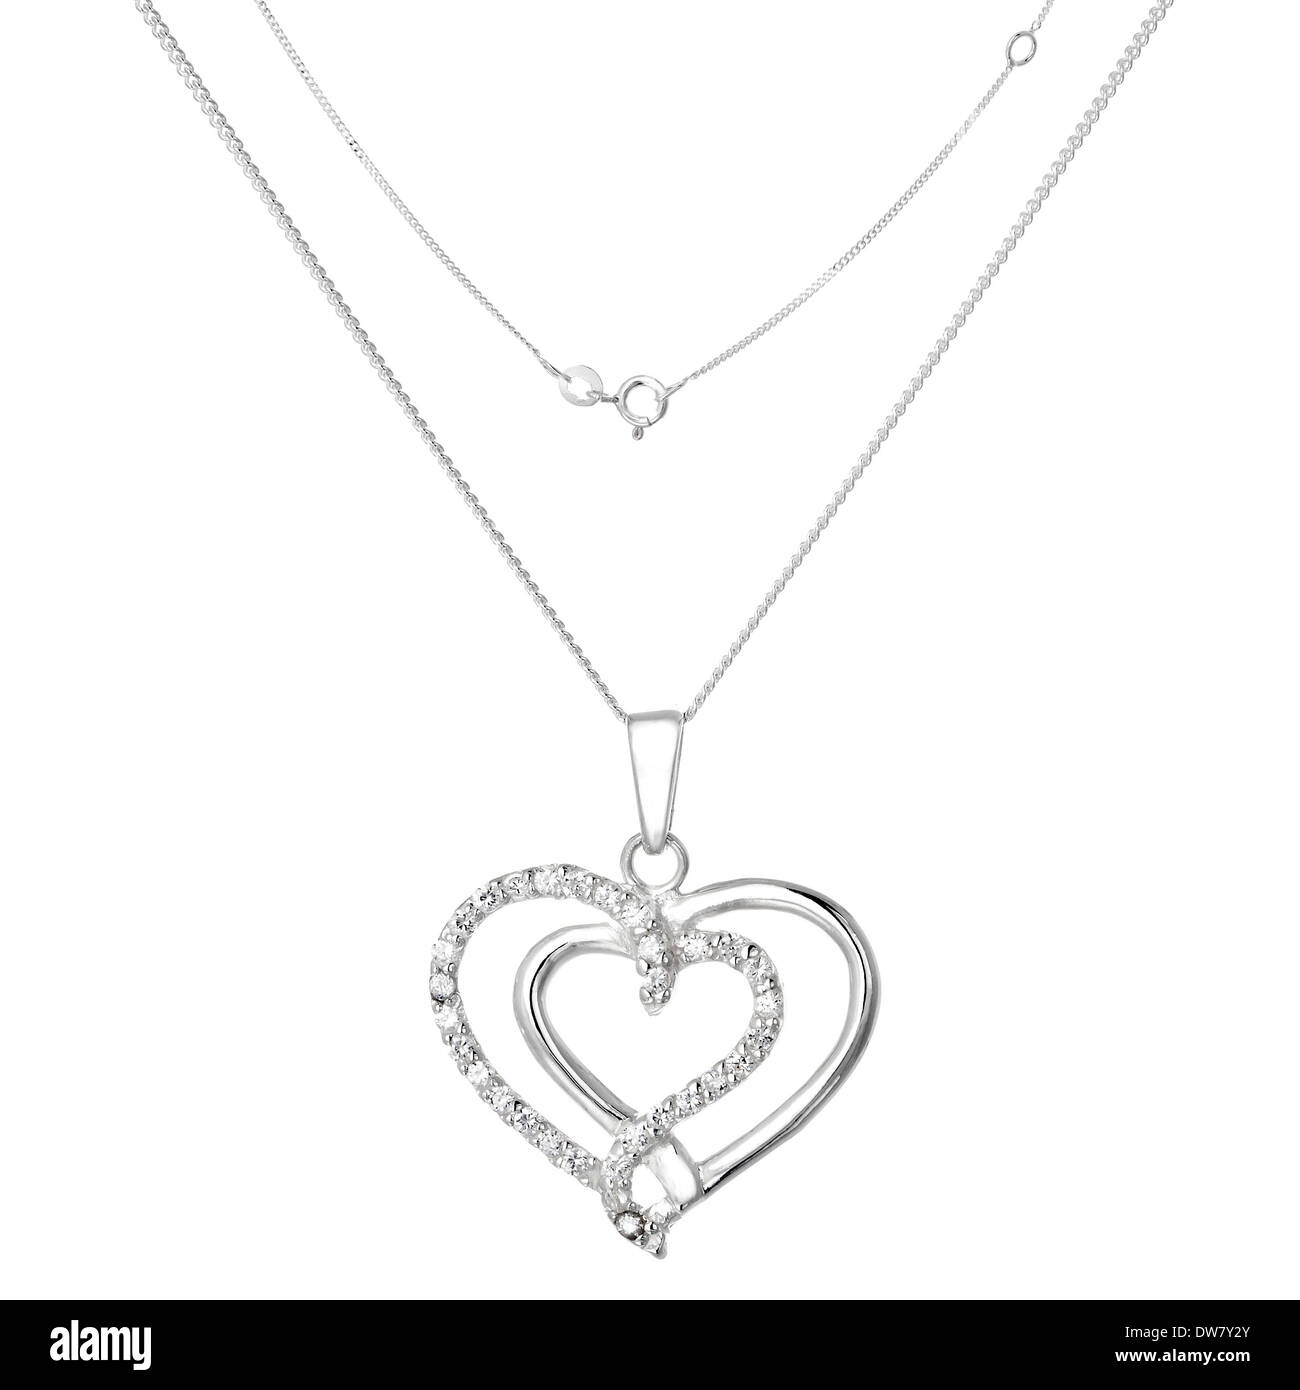 Silberne Halskette und Anhänger in Form des Herzens Stockfoto